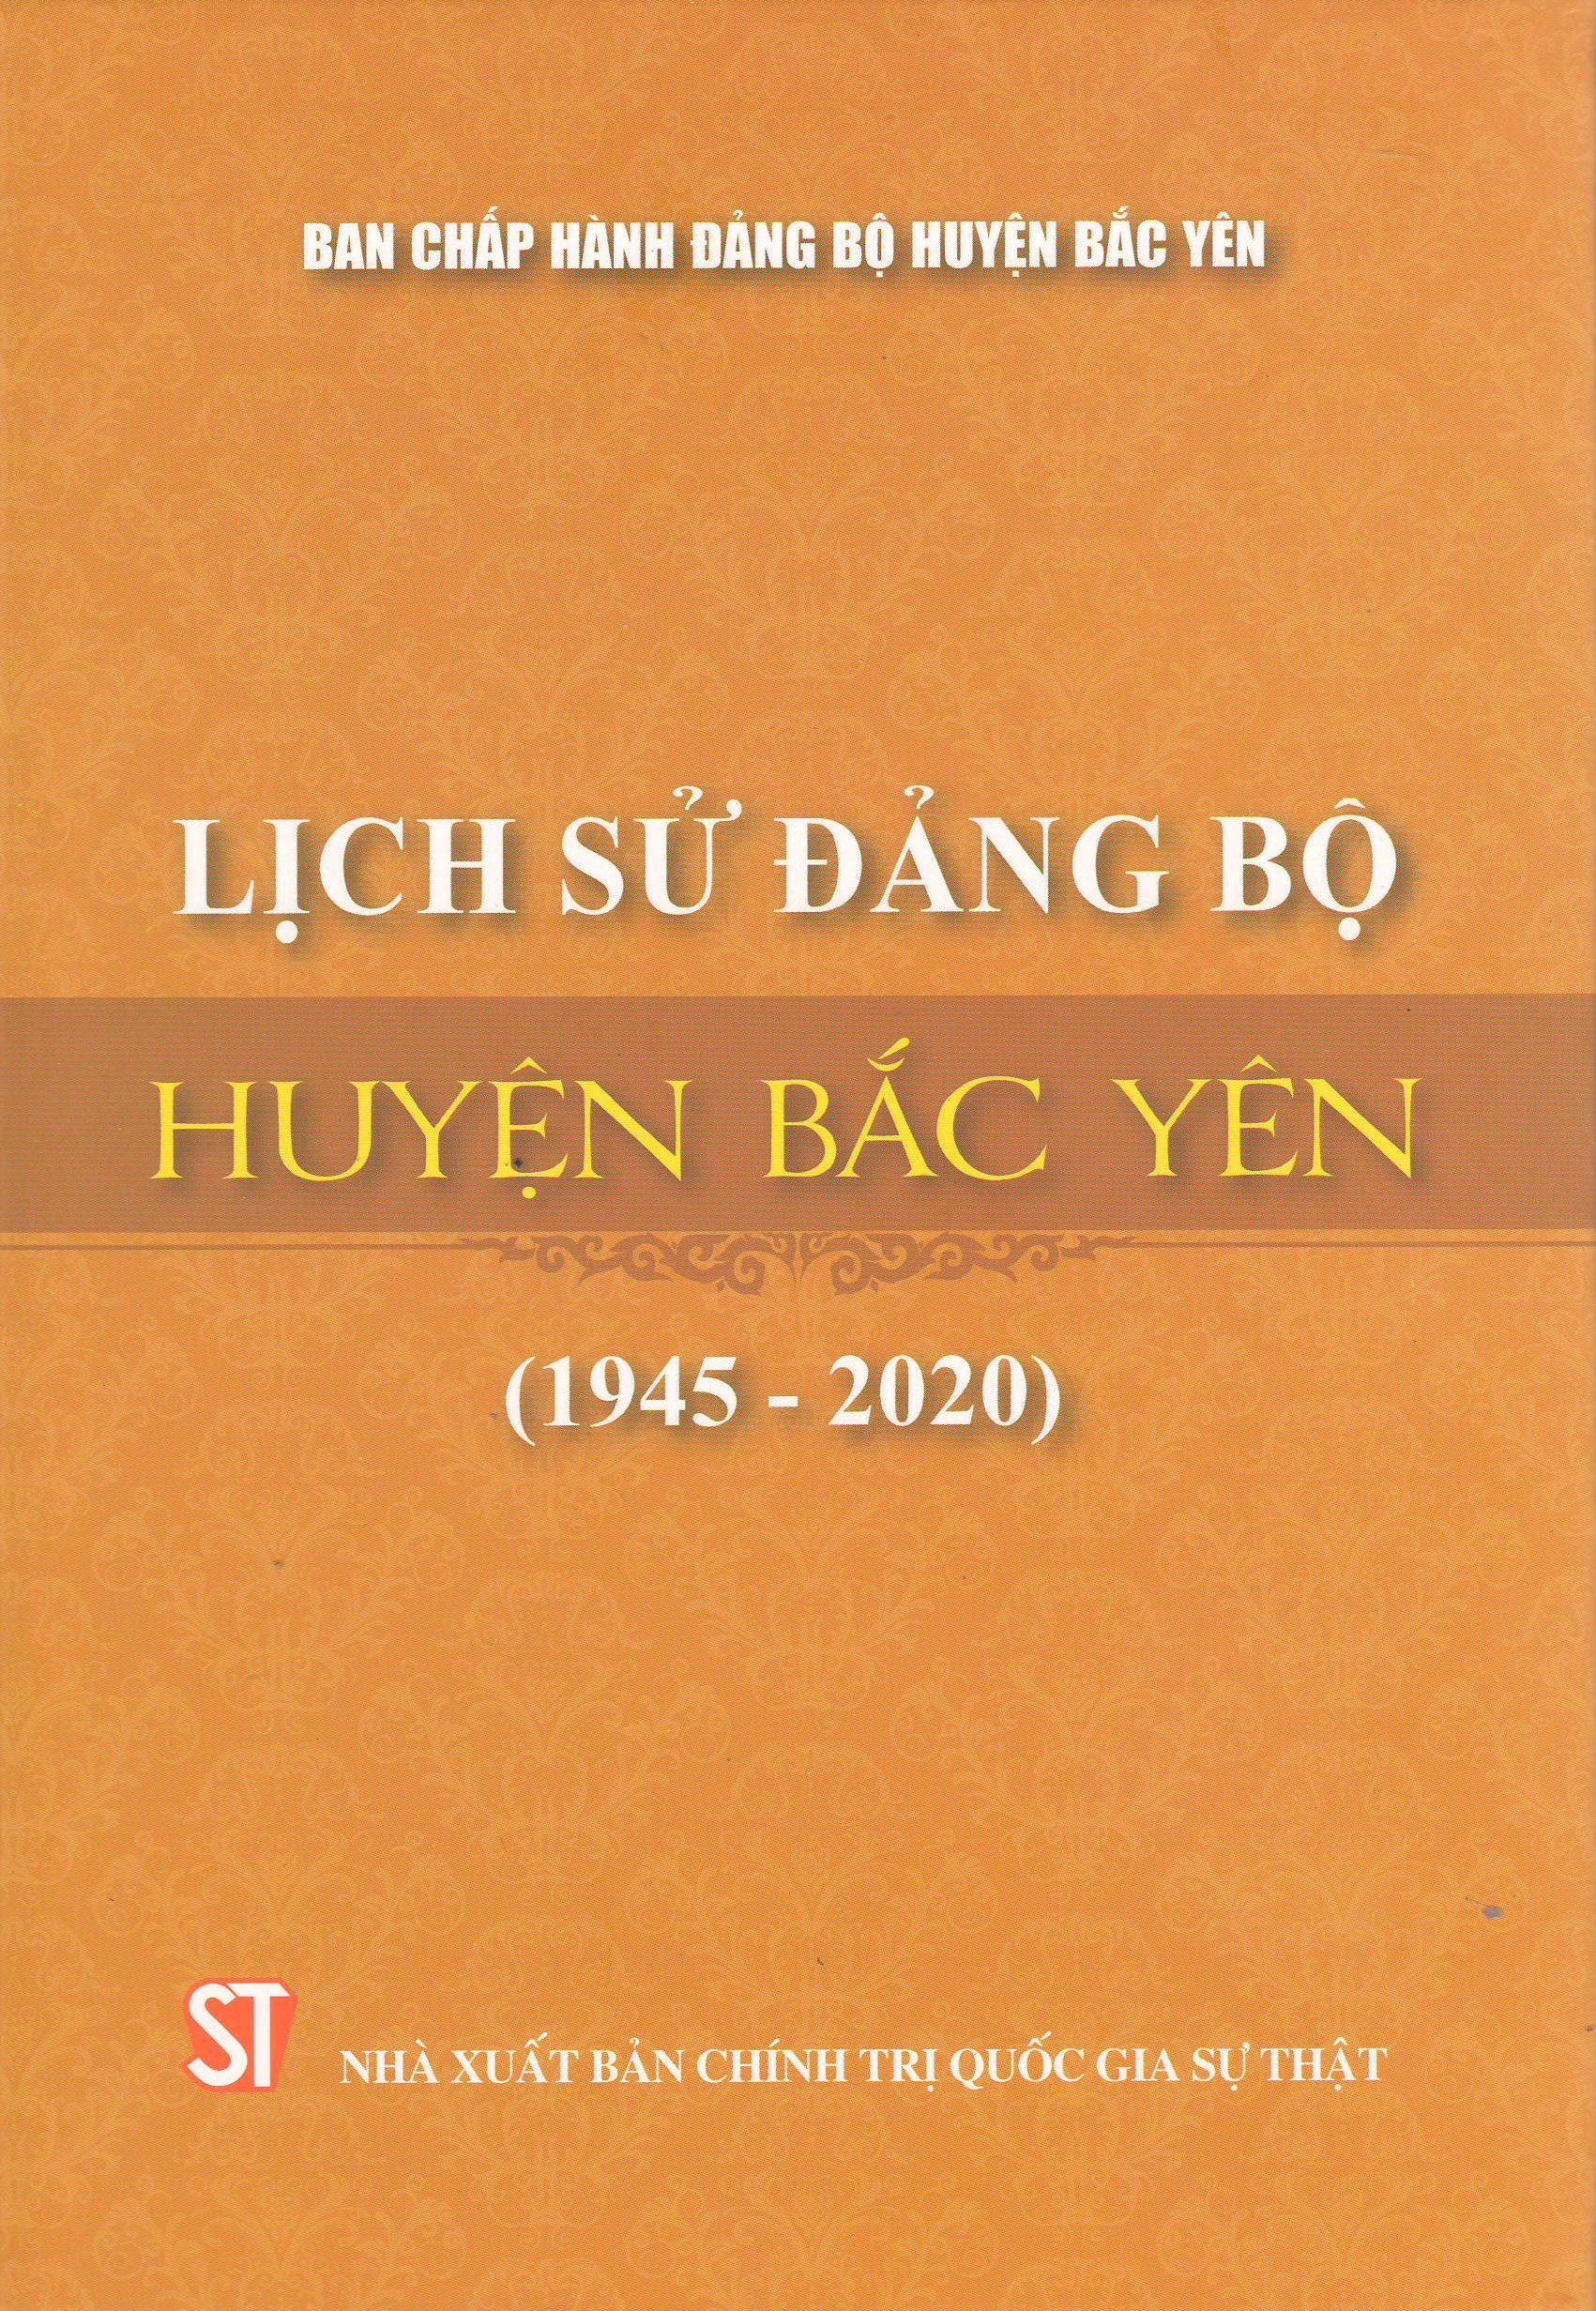 Lịch sử Đảng bộ huyện Bắc Yên (1945 - 2020)